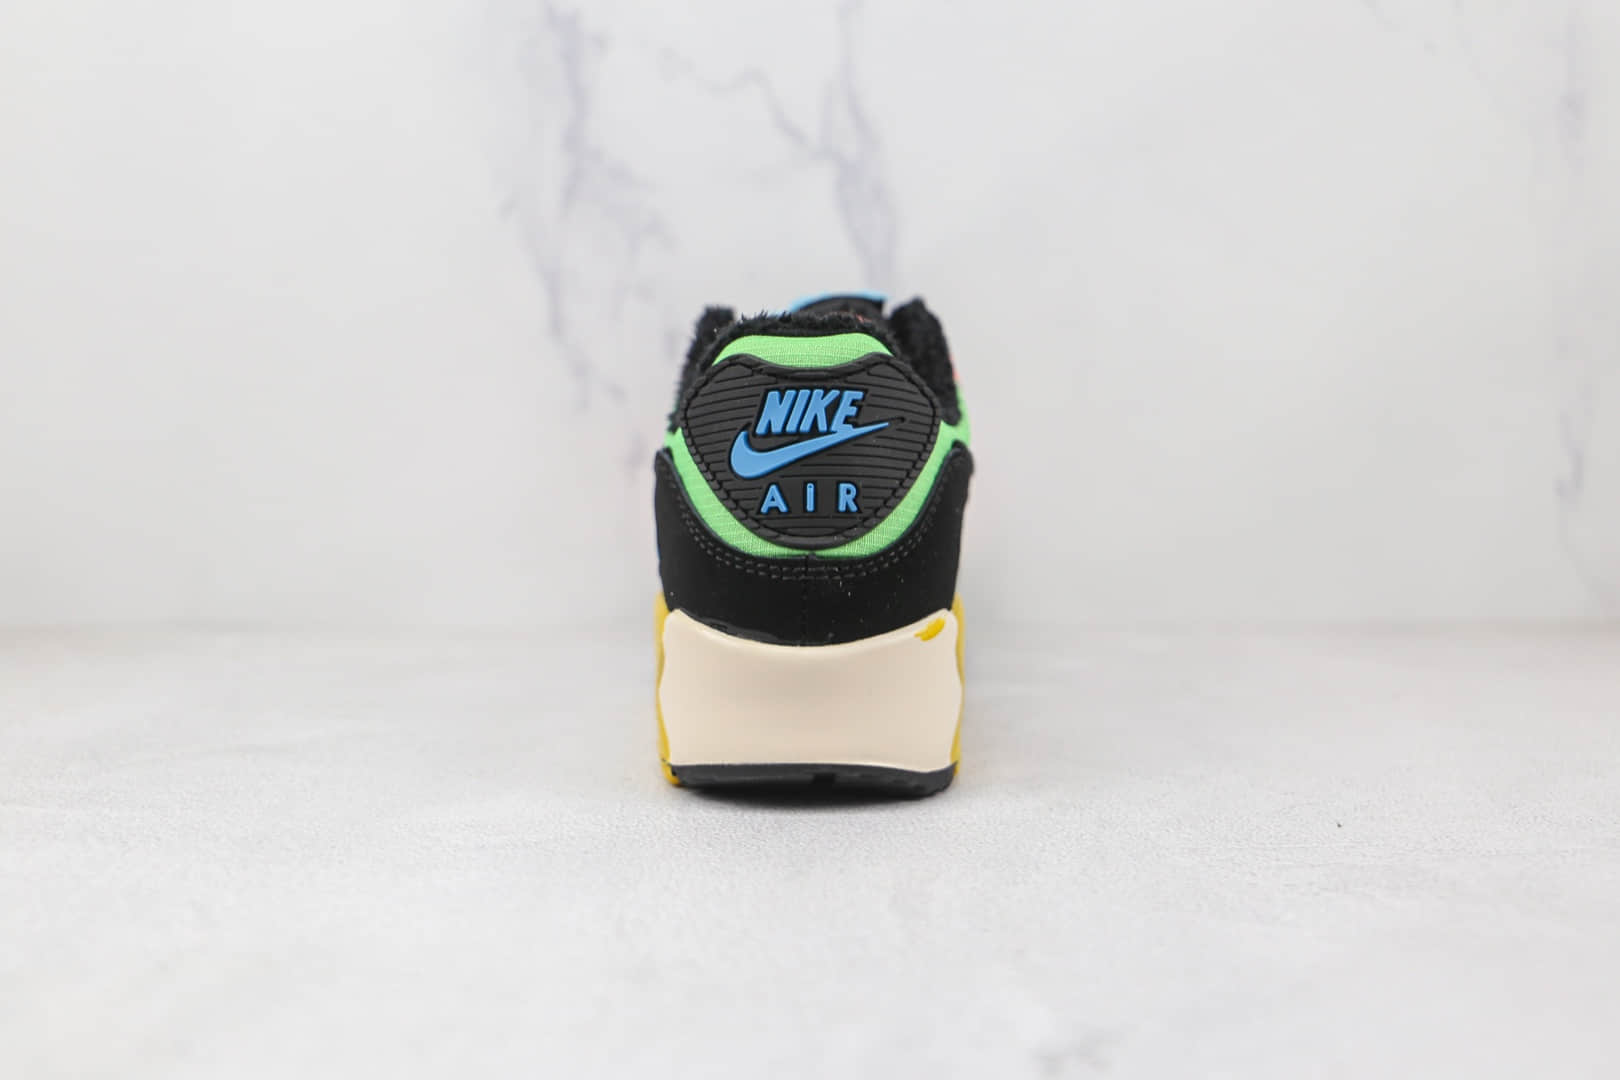 耐克Nike Air Max 90复古气垫跑鞋黑粉绿色 CT1891-600 - 耐克复古气垫跑鞋, Nike Air Max 90, Nike Air Max, Nike, CT1891-600